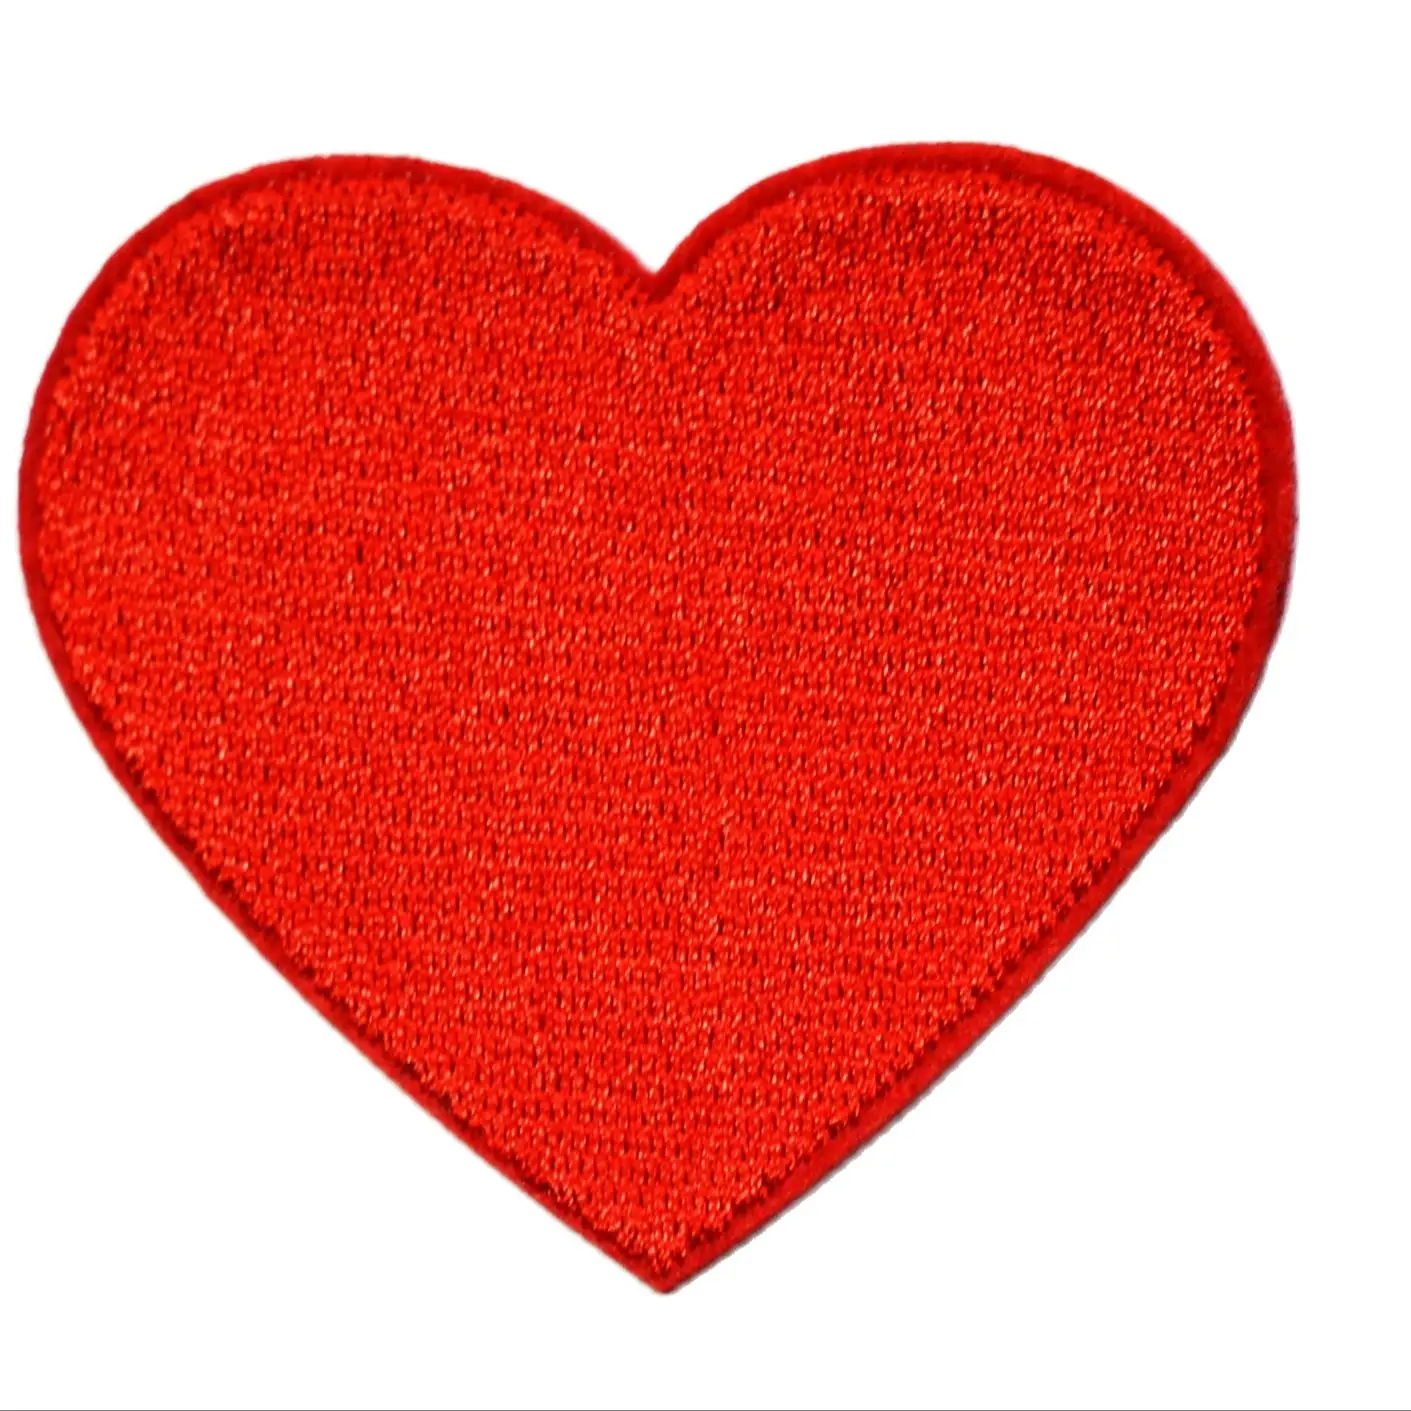 

5x Красное сердце любовь День Святого Валентина 70s ретро фоторазвлекательная аппликация утюгом нашивка (≈ 5,5*5,2 см)